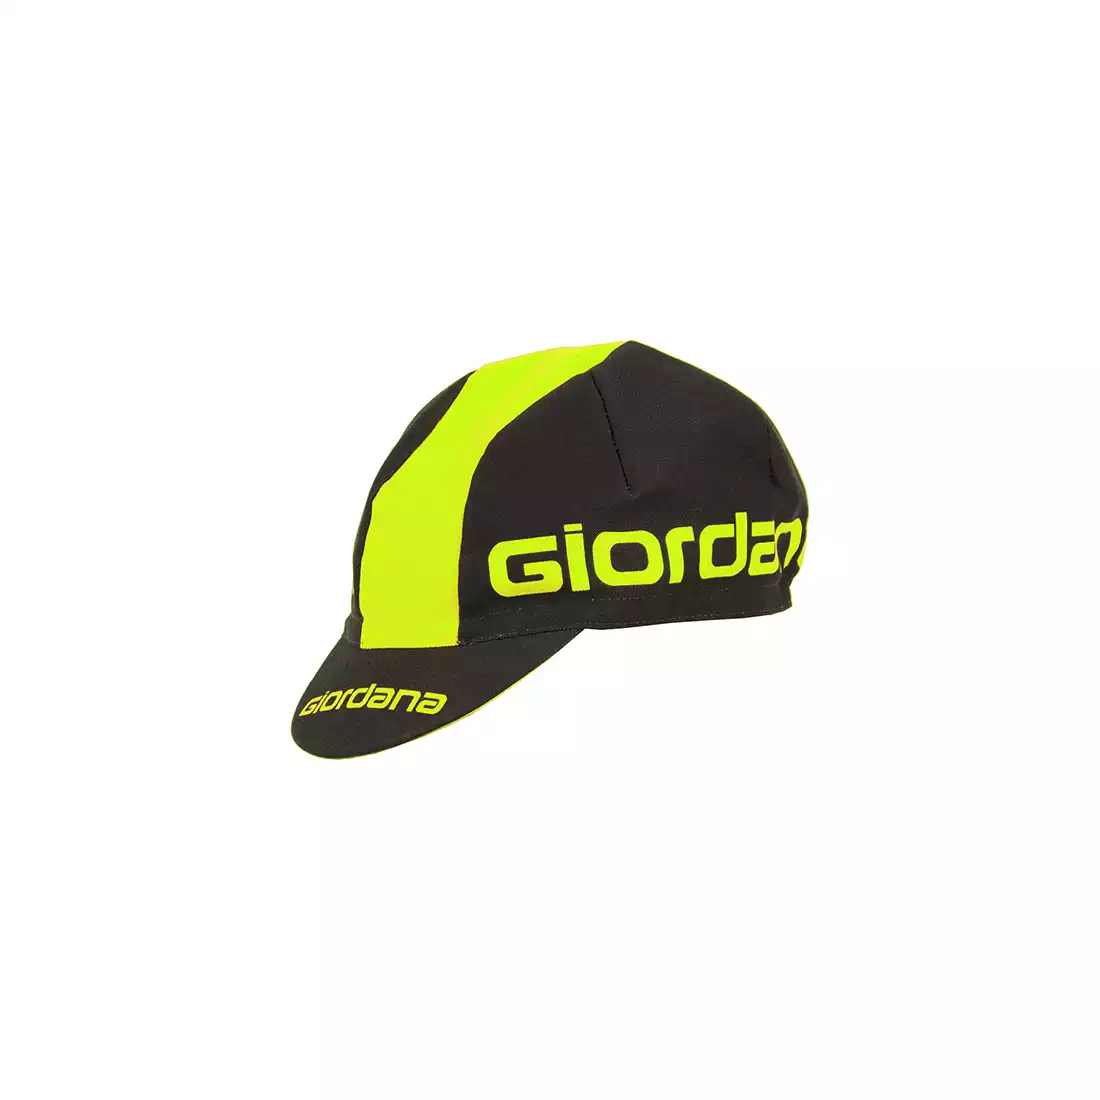 GIORDANA SS18 czapeczka kolarska - Giordana Logo - Black/Fluo Yellow GI-S5-COCA-GIOR-BKYL one size